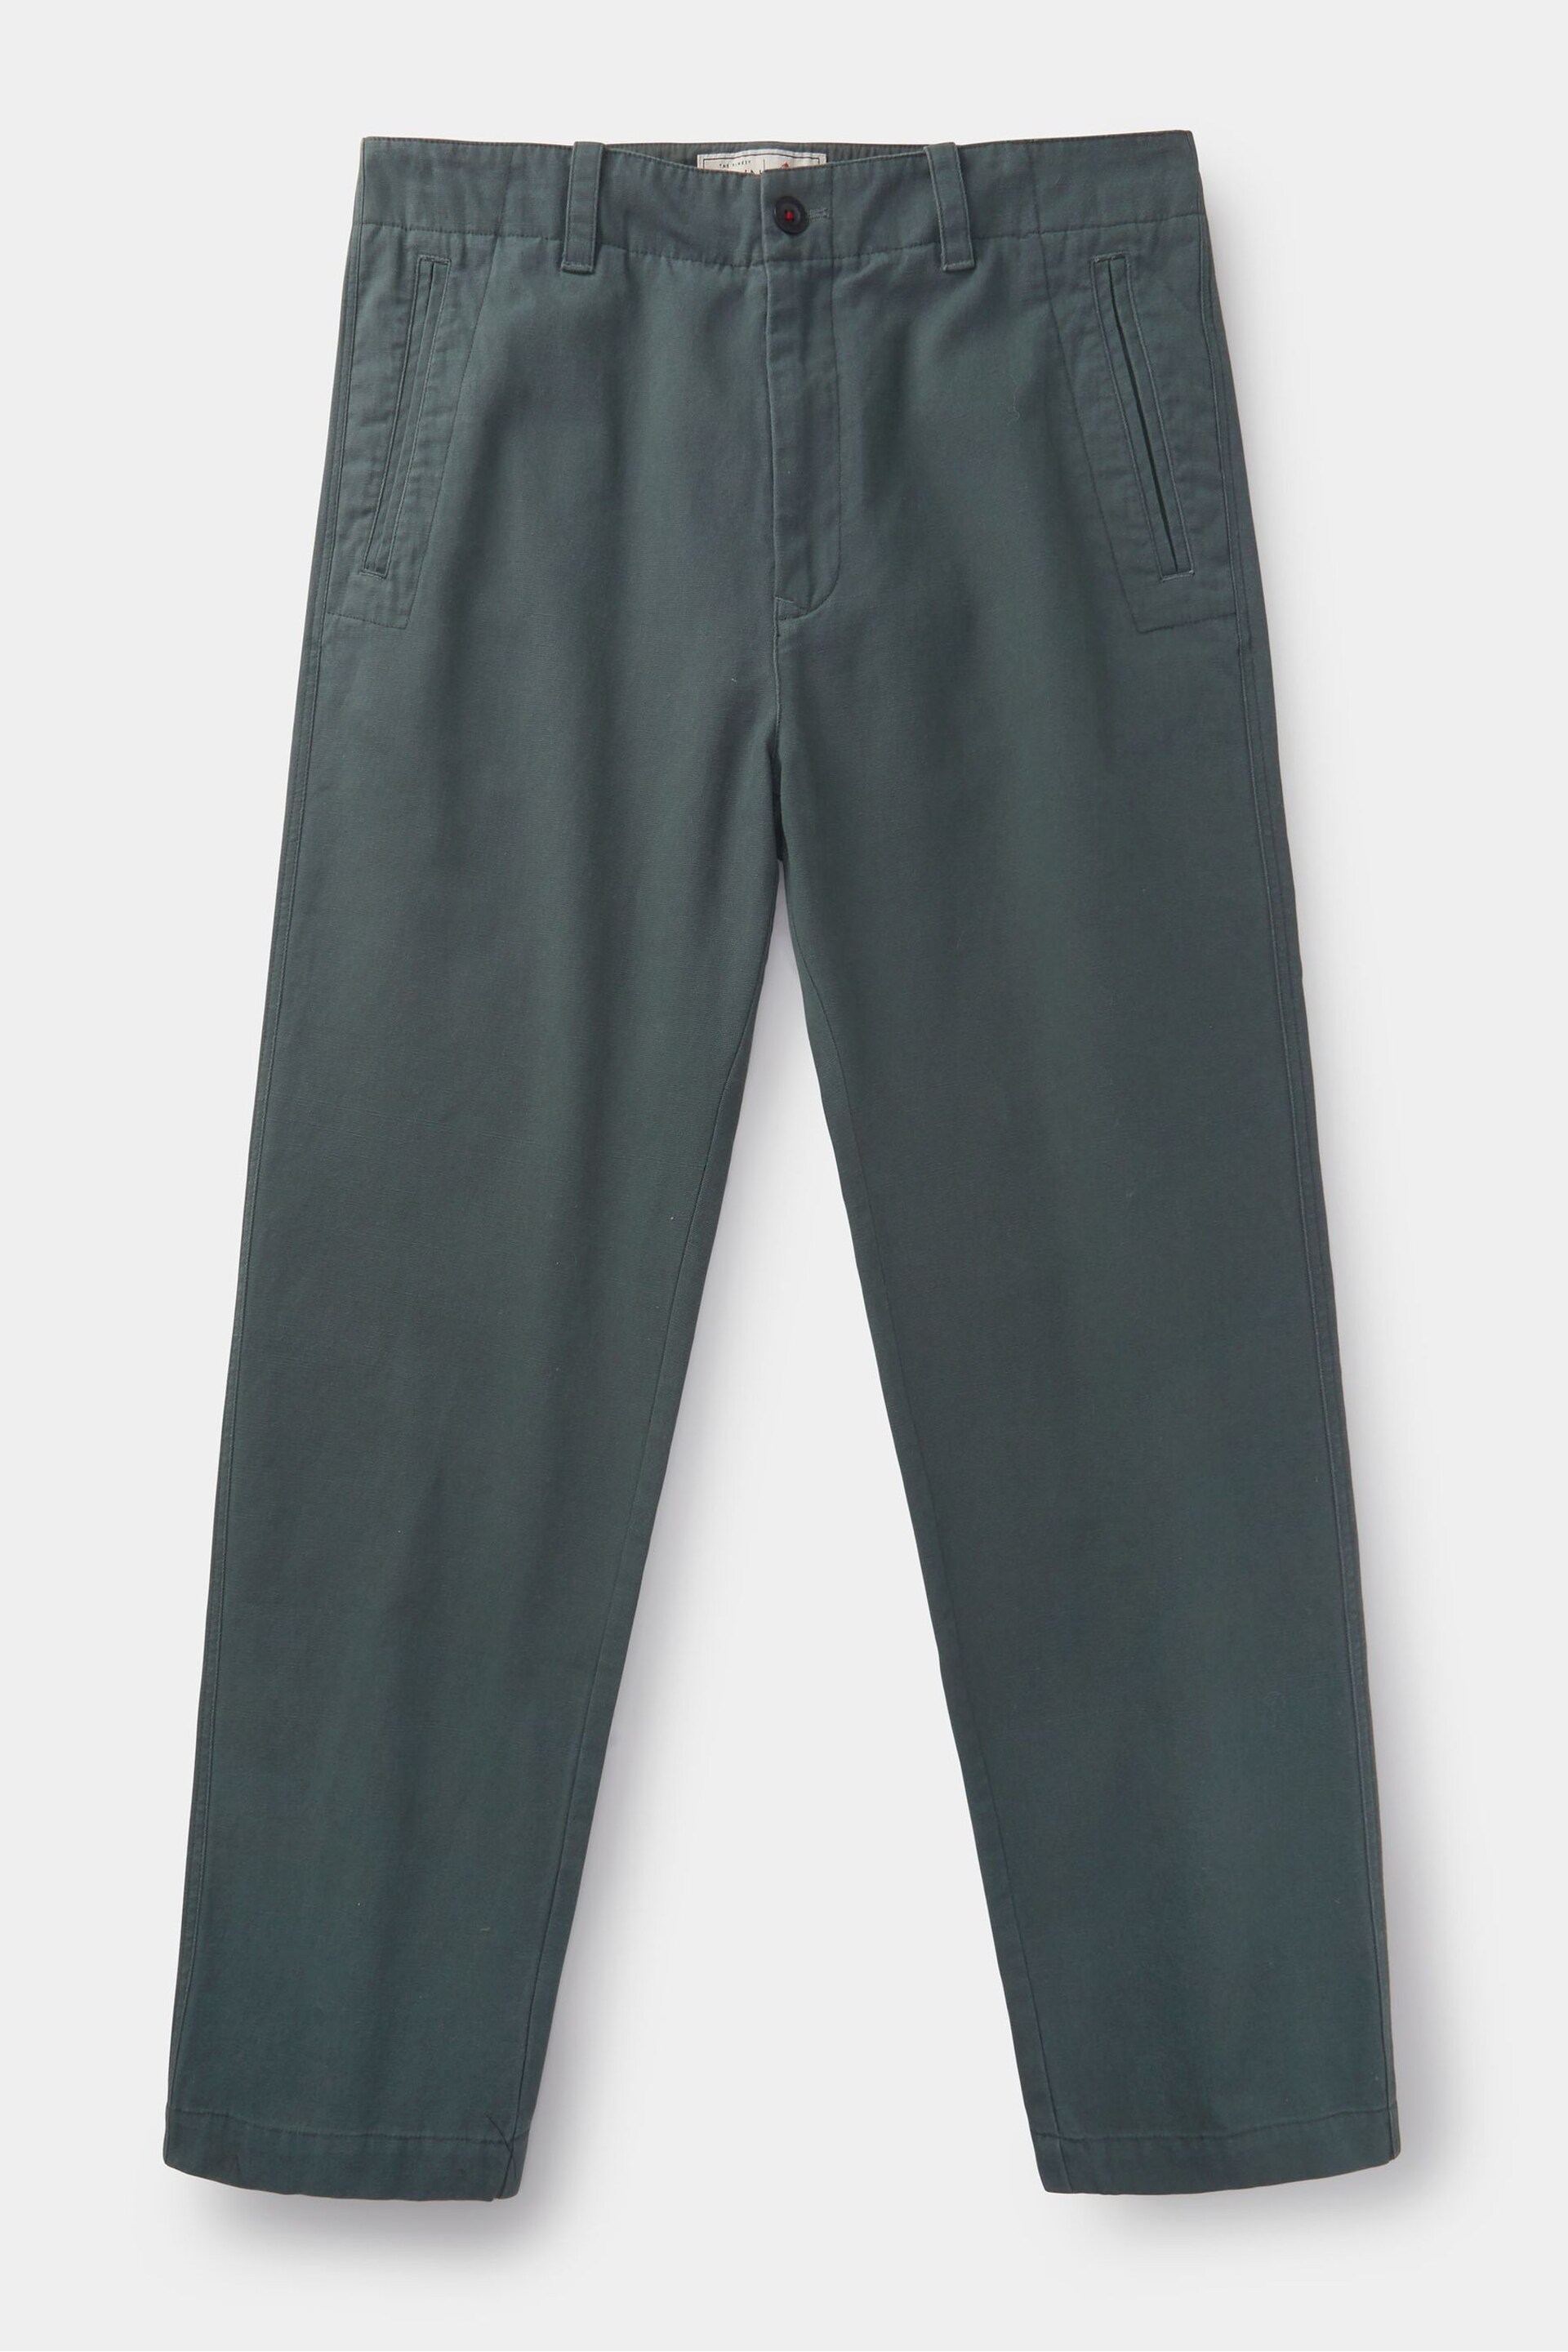 Aubin Green Nettleton Trousers - Image 6 of 6